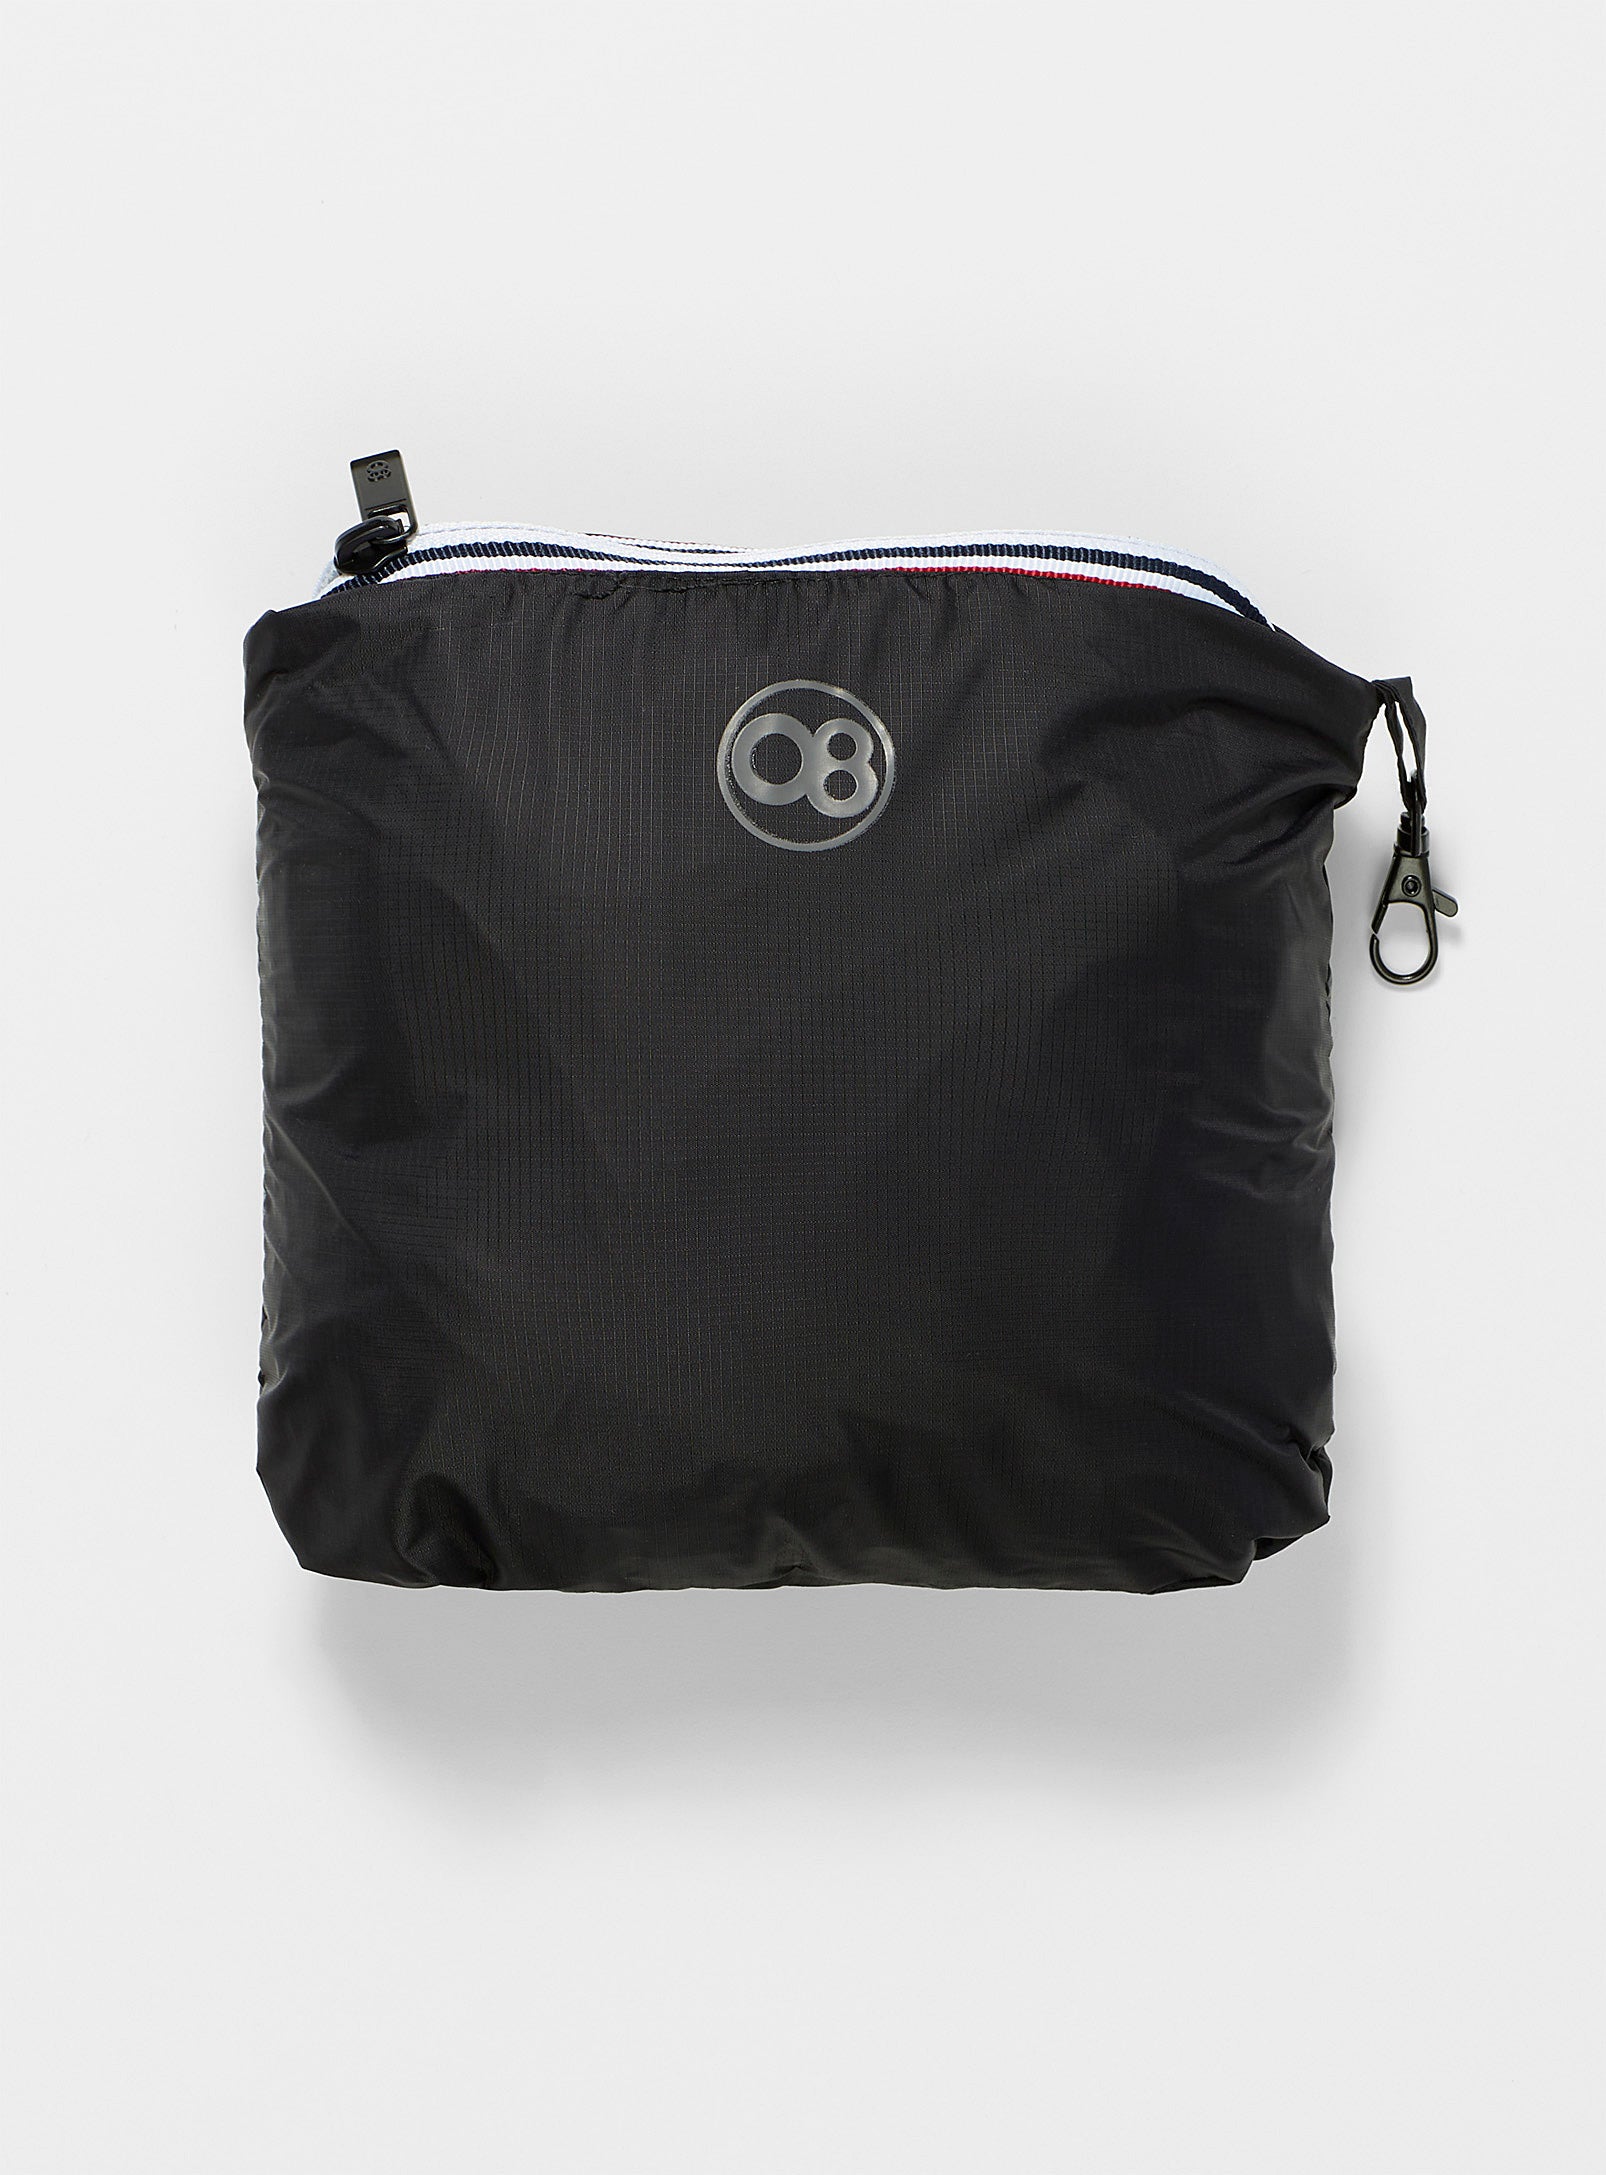 Alex - Black Quarter Zip Packable Light Rain Jacket - O8lifestyle